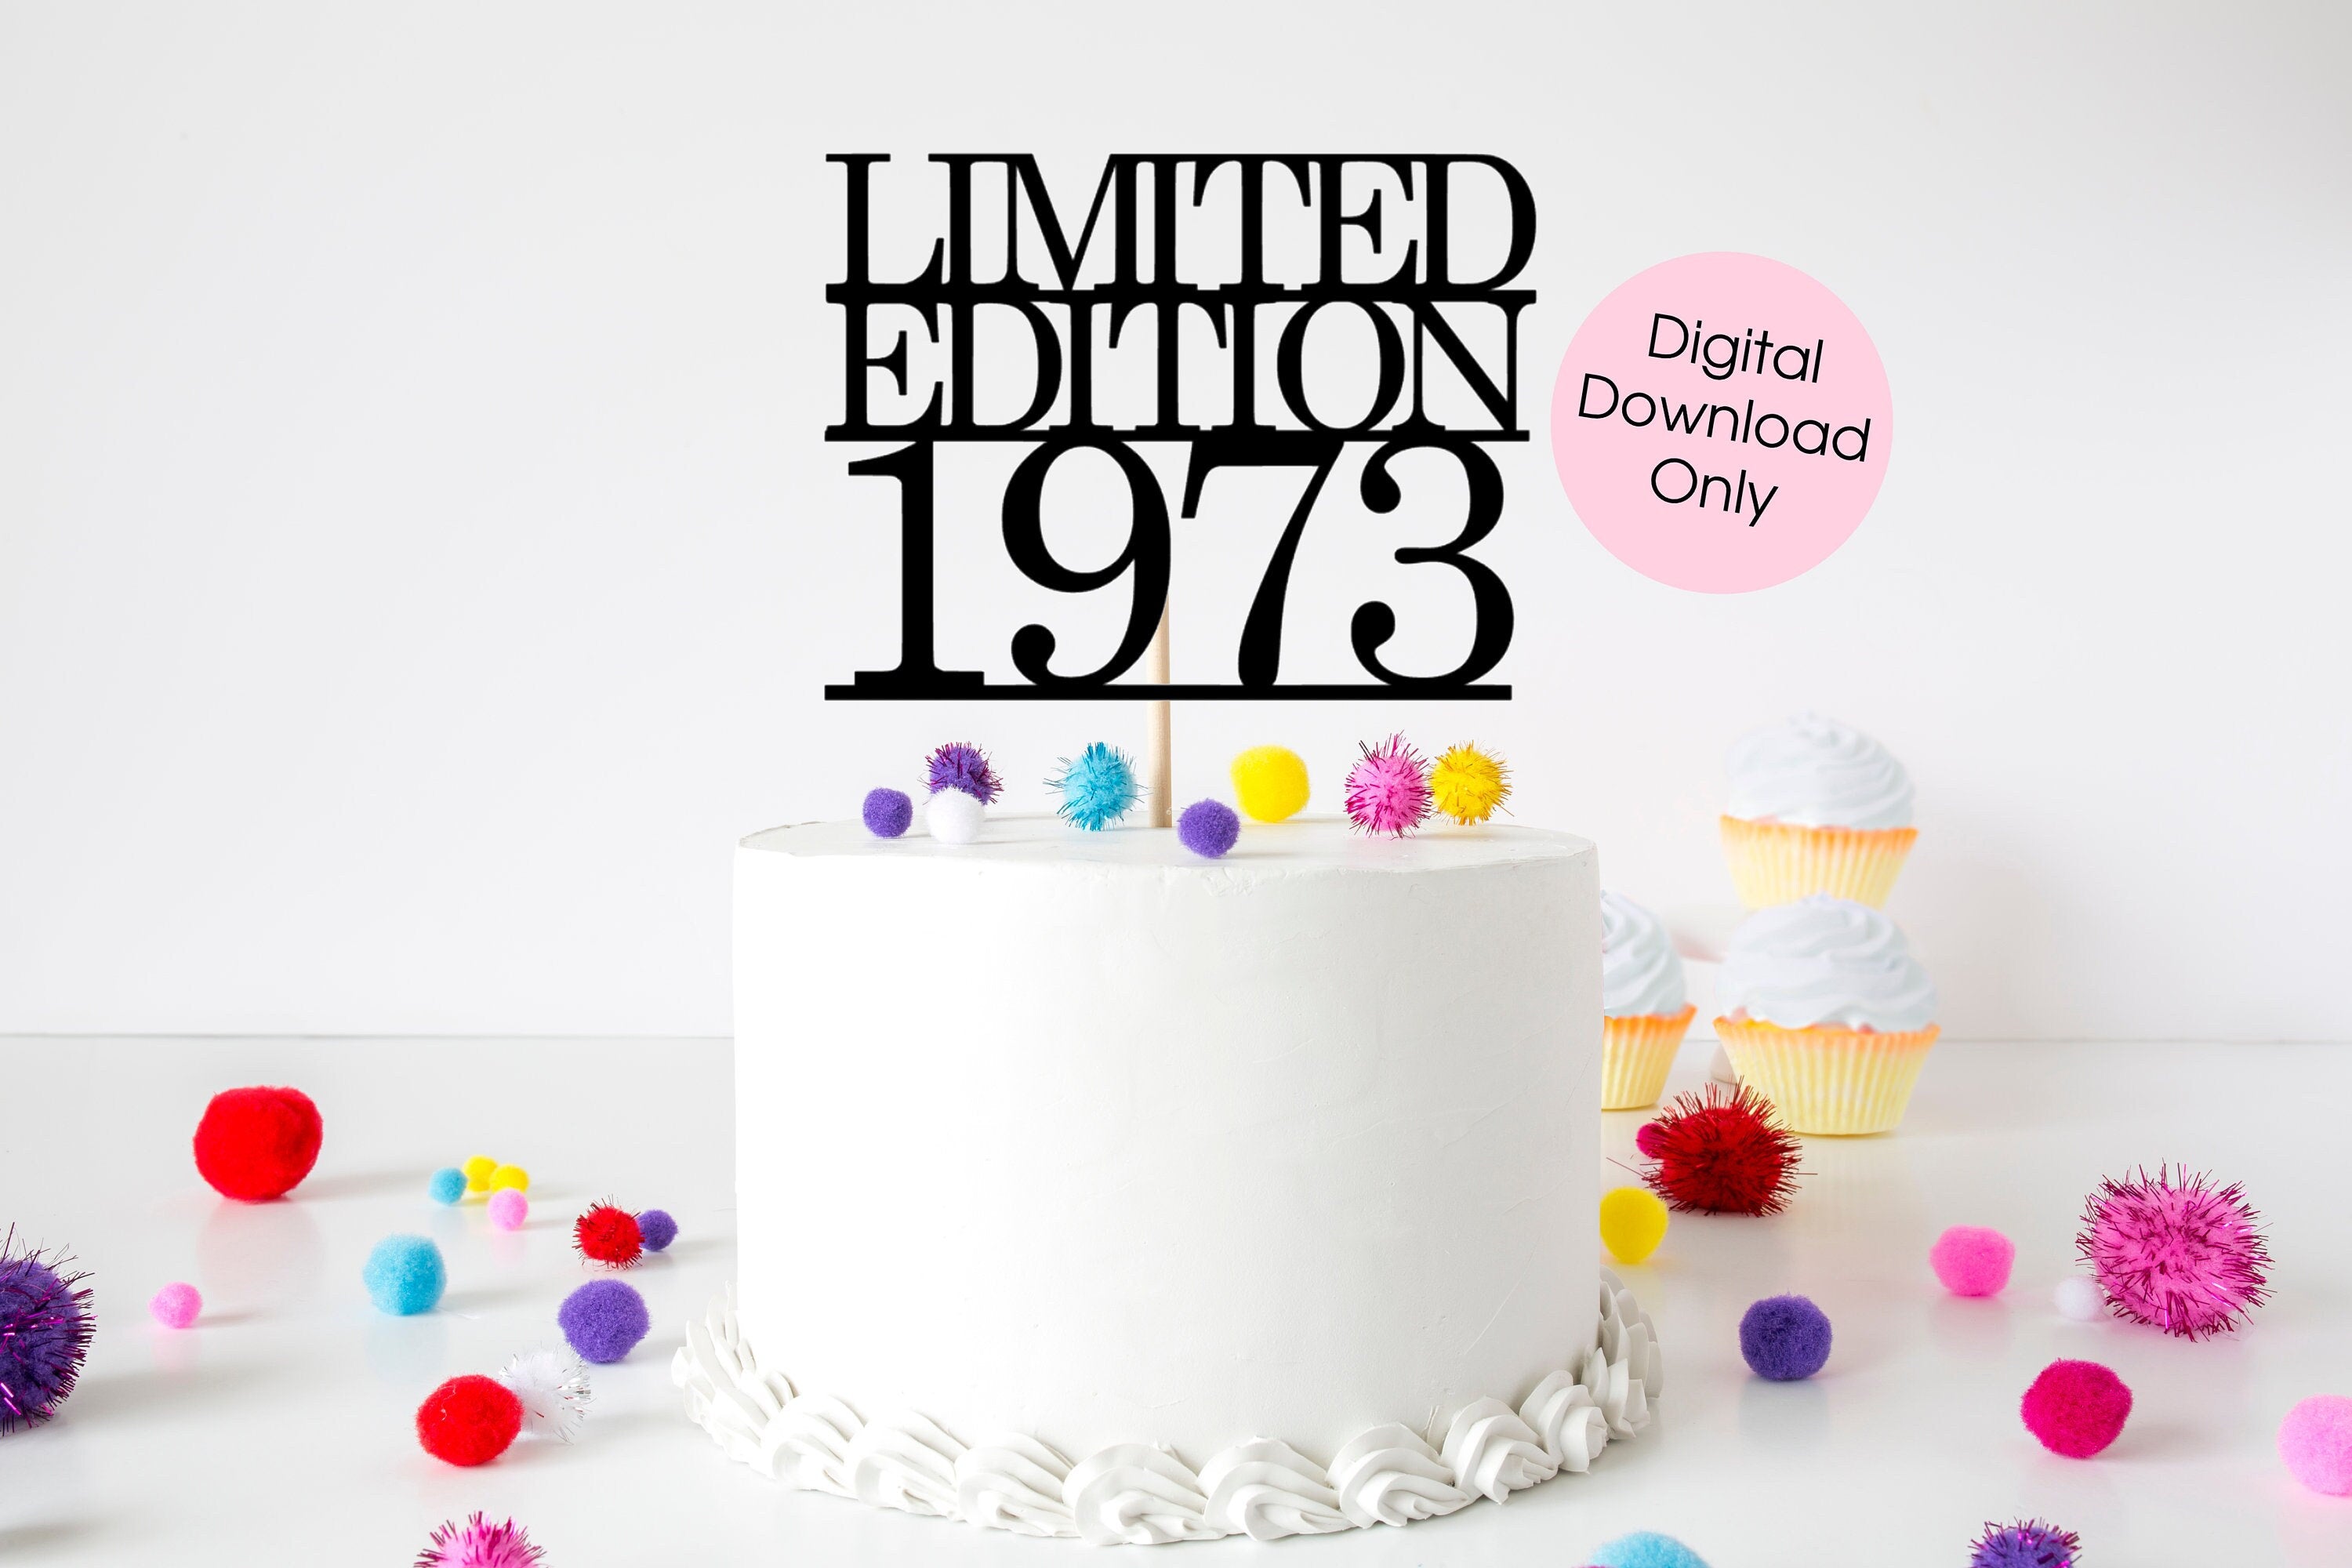 50th birthday cake design for men - YouTube